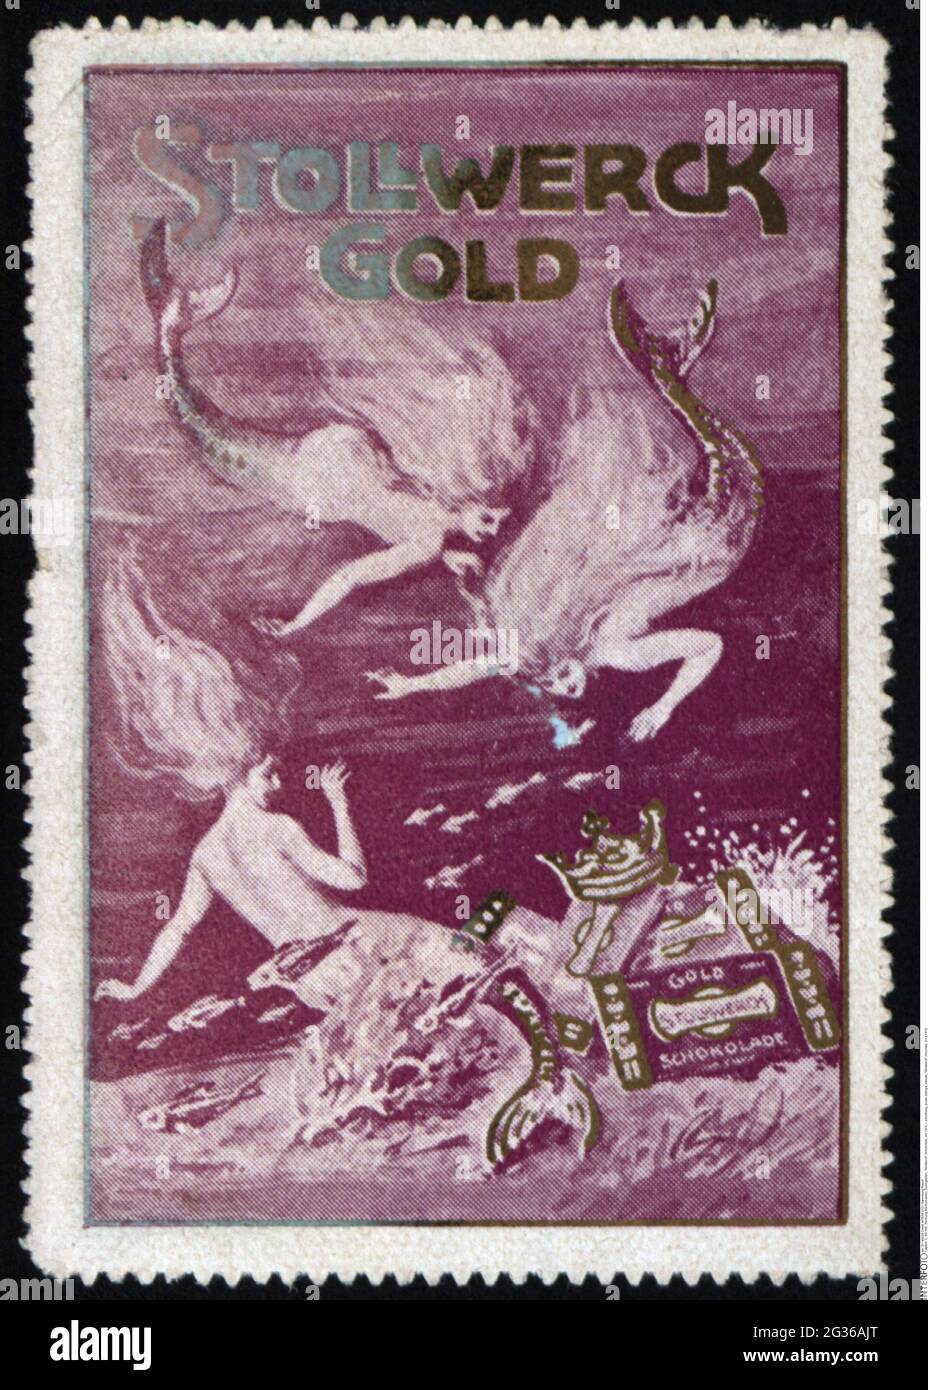 Publicité, timbres-affiches, bonbons, chocolat « Solllwerck », vers 1910, INFO-AUTORISATION-DROITS-SUPPLÉMENTAIRES-NON-DISPONIBLE Banque D'Images